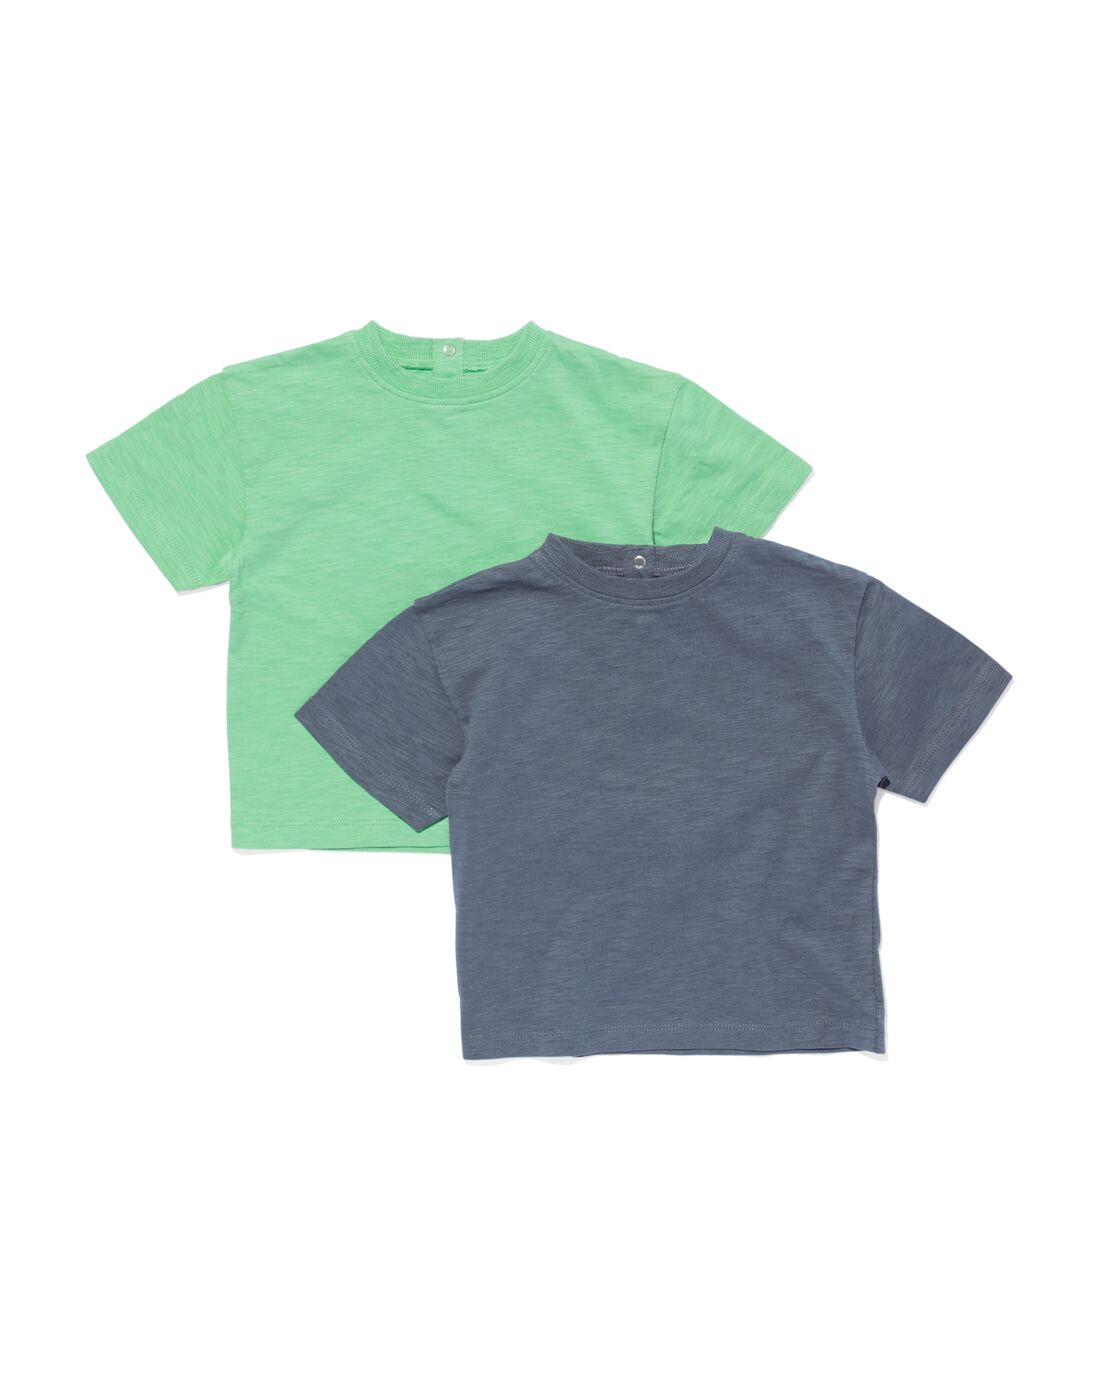 Image of baby t-shirts - 2 stuks groen